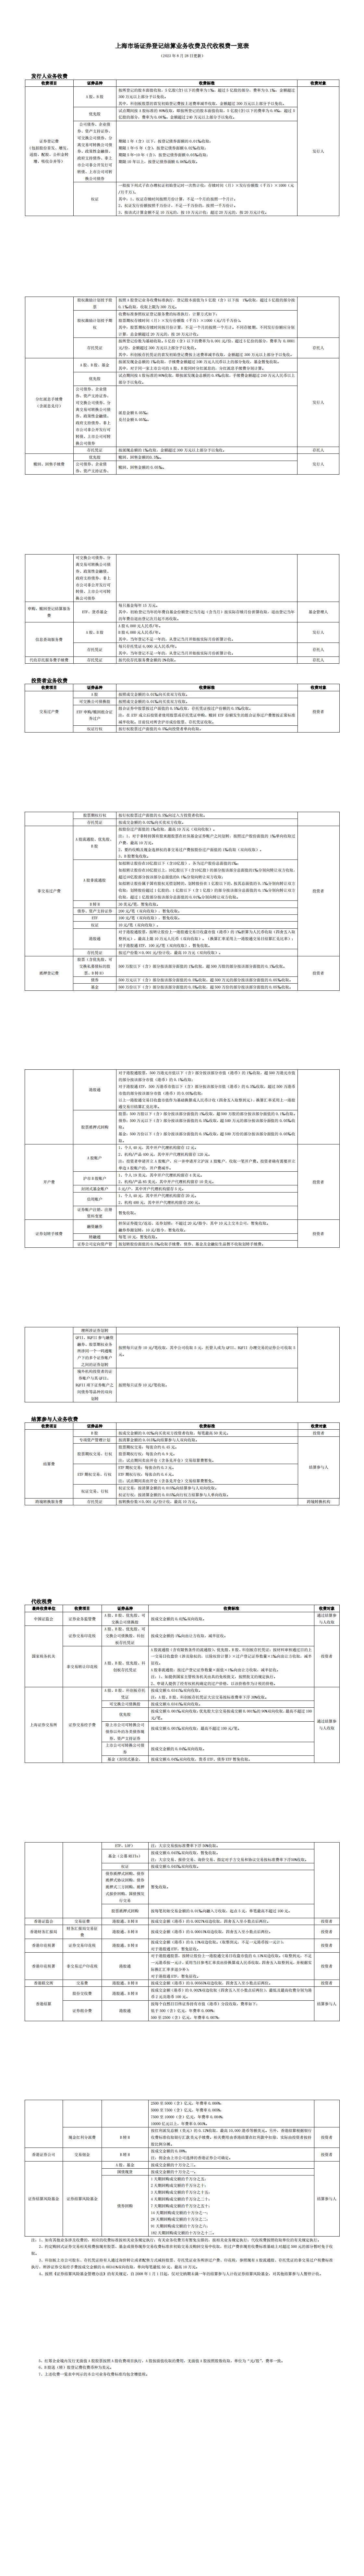 上海市场证券登记结算业务收费及代收税费一览表(1)_00.jpg